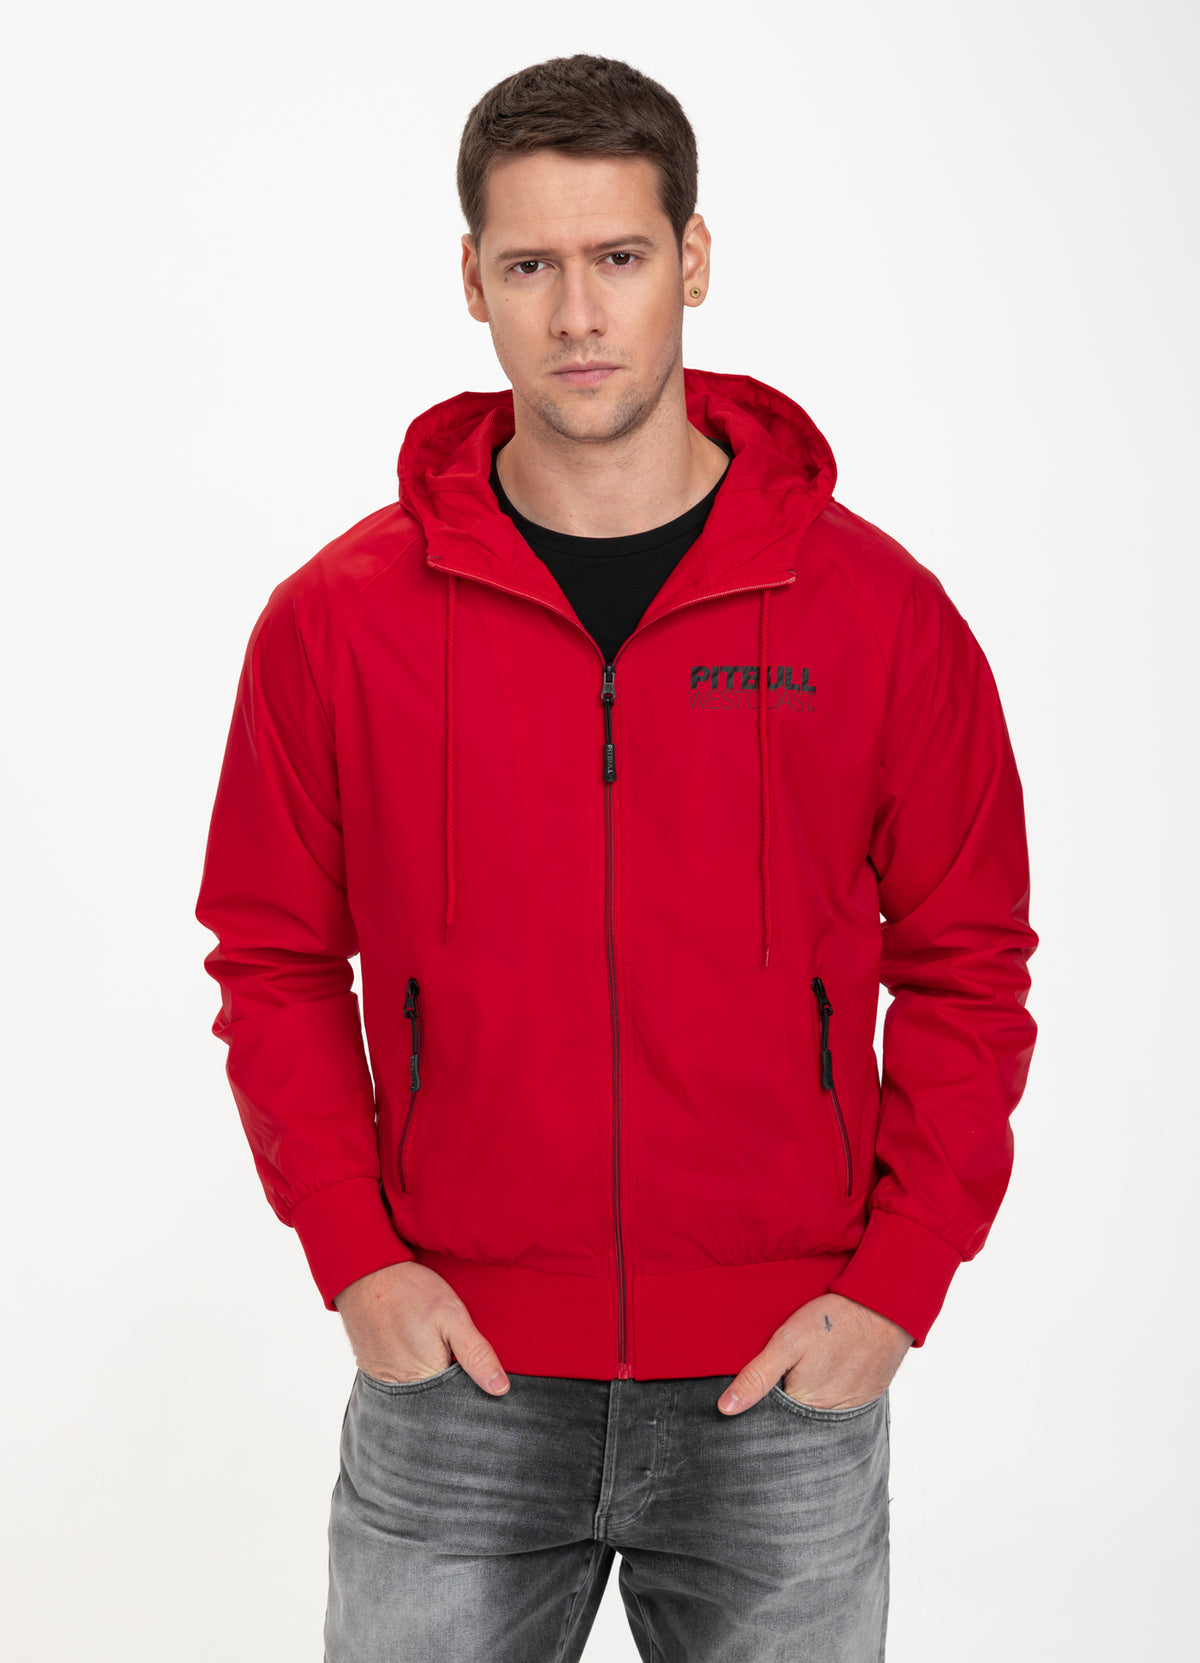 ATHLETIC Jacket Red - Pitbull West Coast International Store 